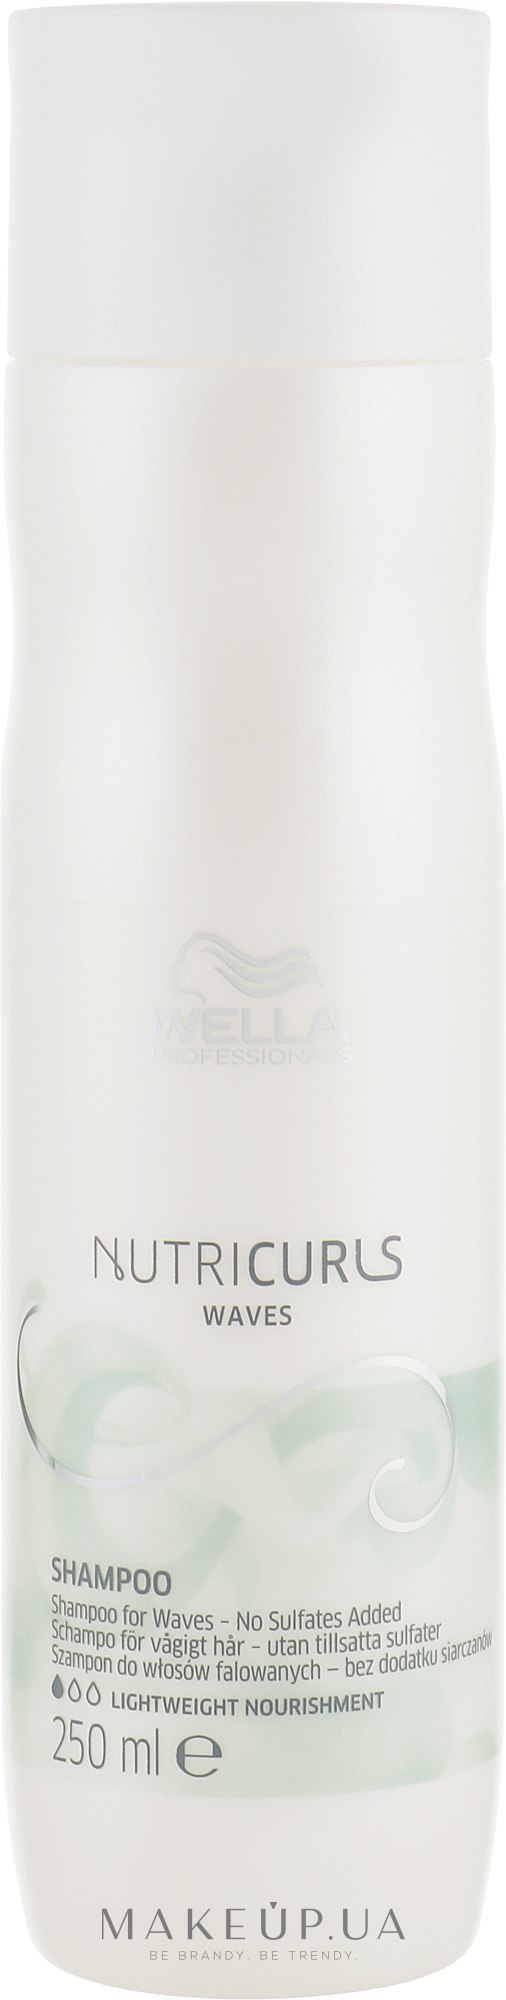 Бессульфатный шампунь для вьющихся волос - Wella Professionals Nutricurls Waves Shampoo — фото 250ml